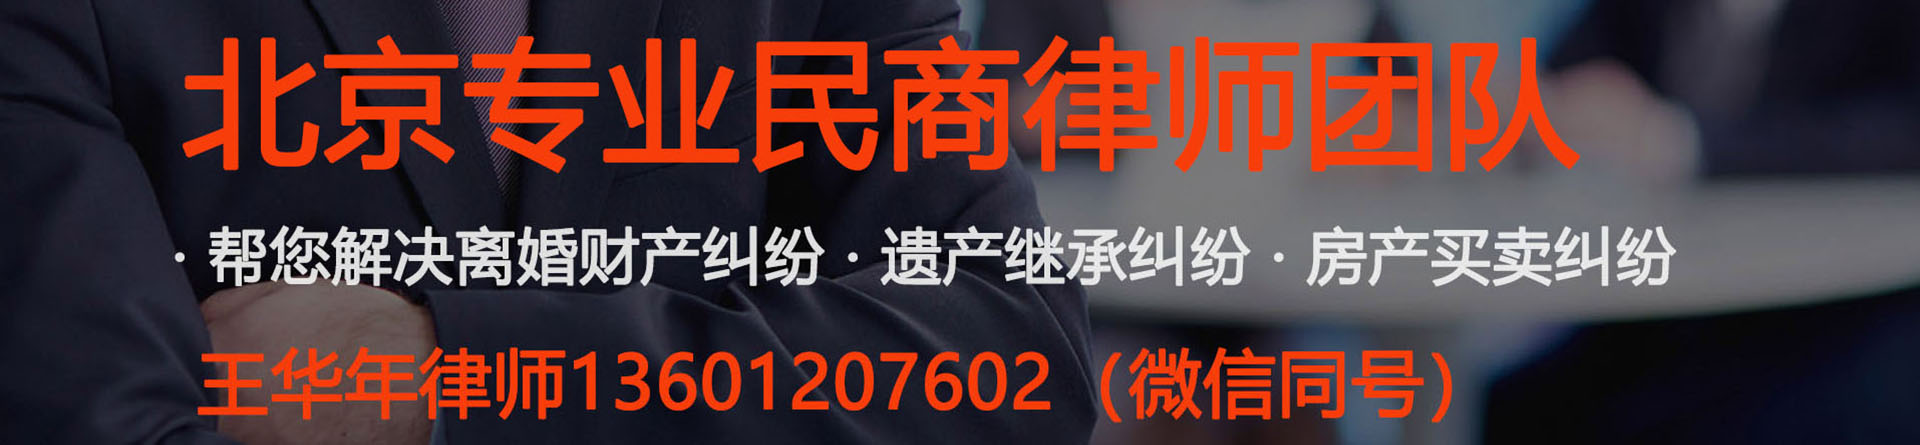 东直门律师事务所免费咨询-北京东城东直门附近的律师事务所地址电话